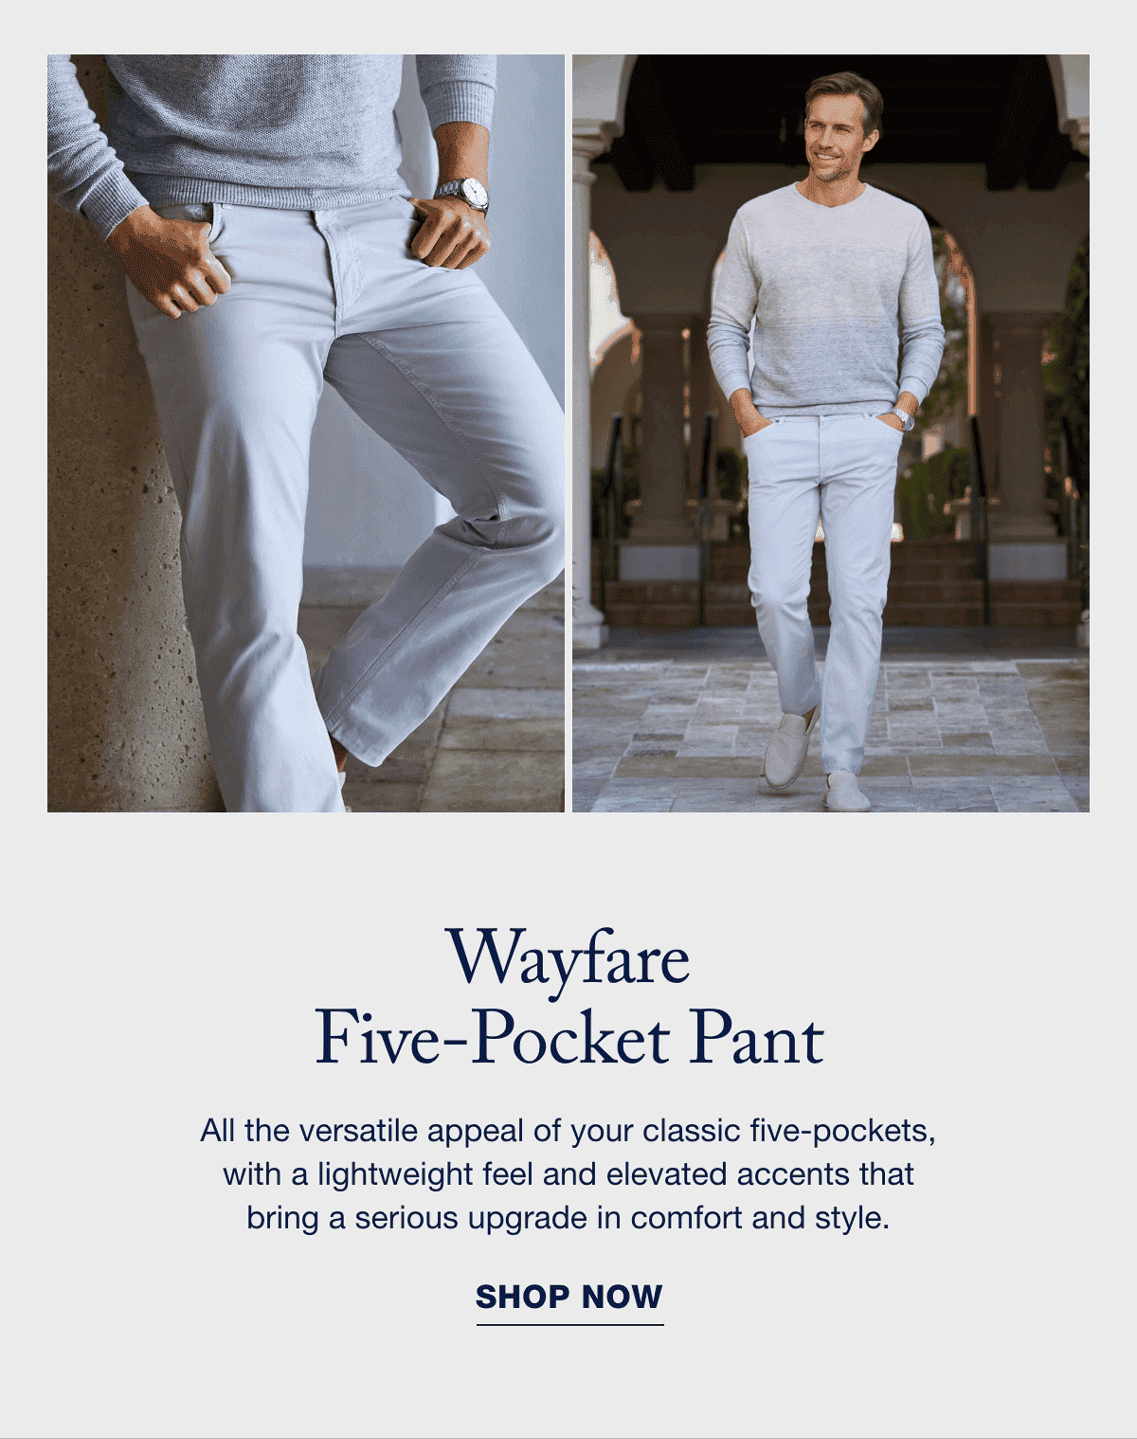 Wayfare Five-Pocket Pant - Shop Now